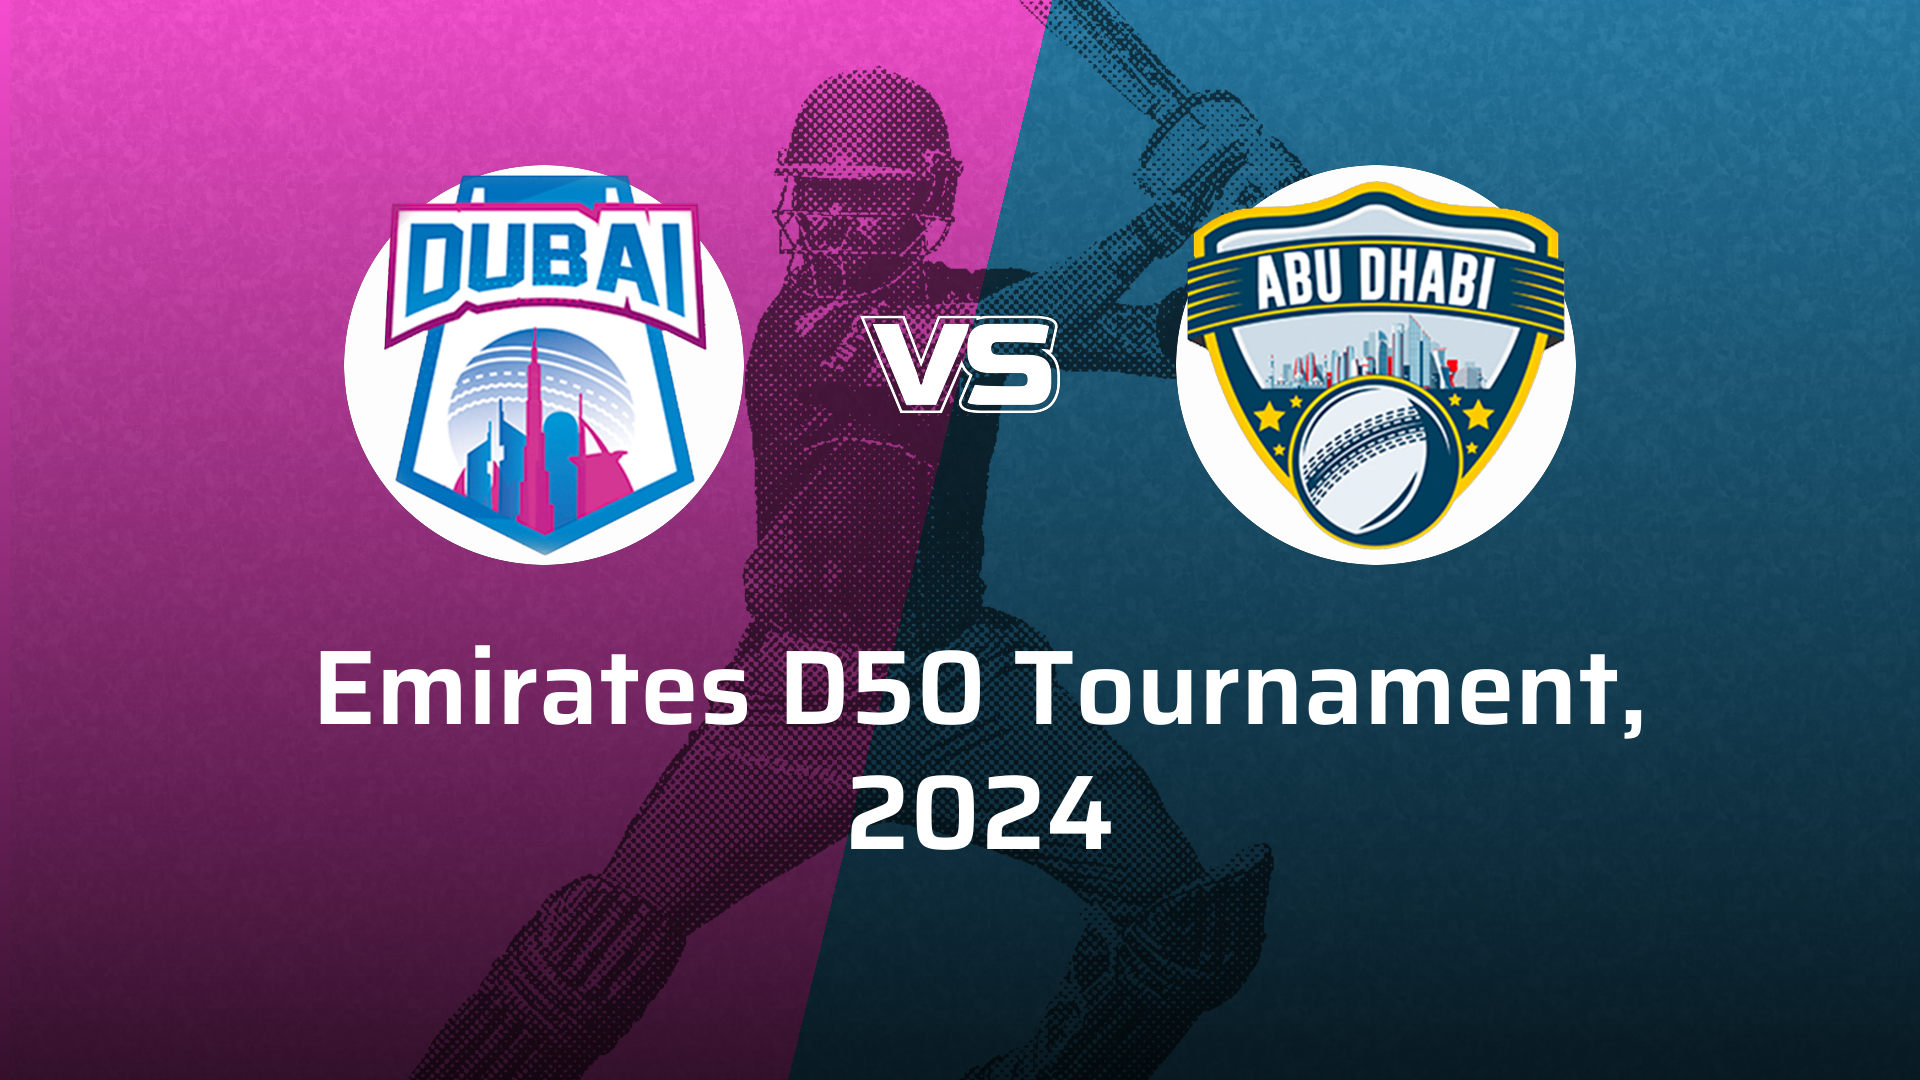 Abu Dhabi VS Dubai